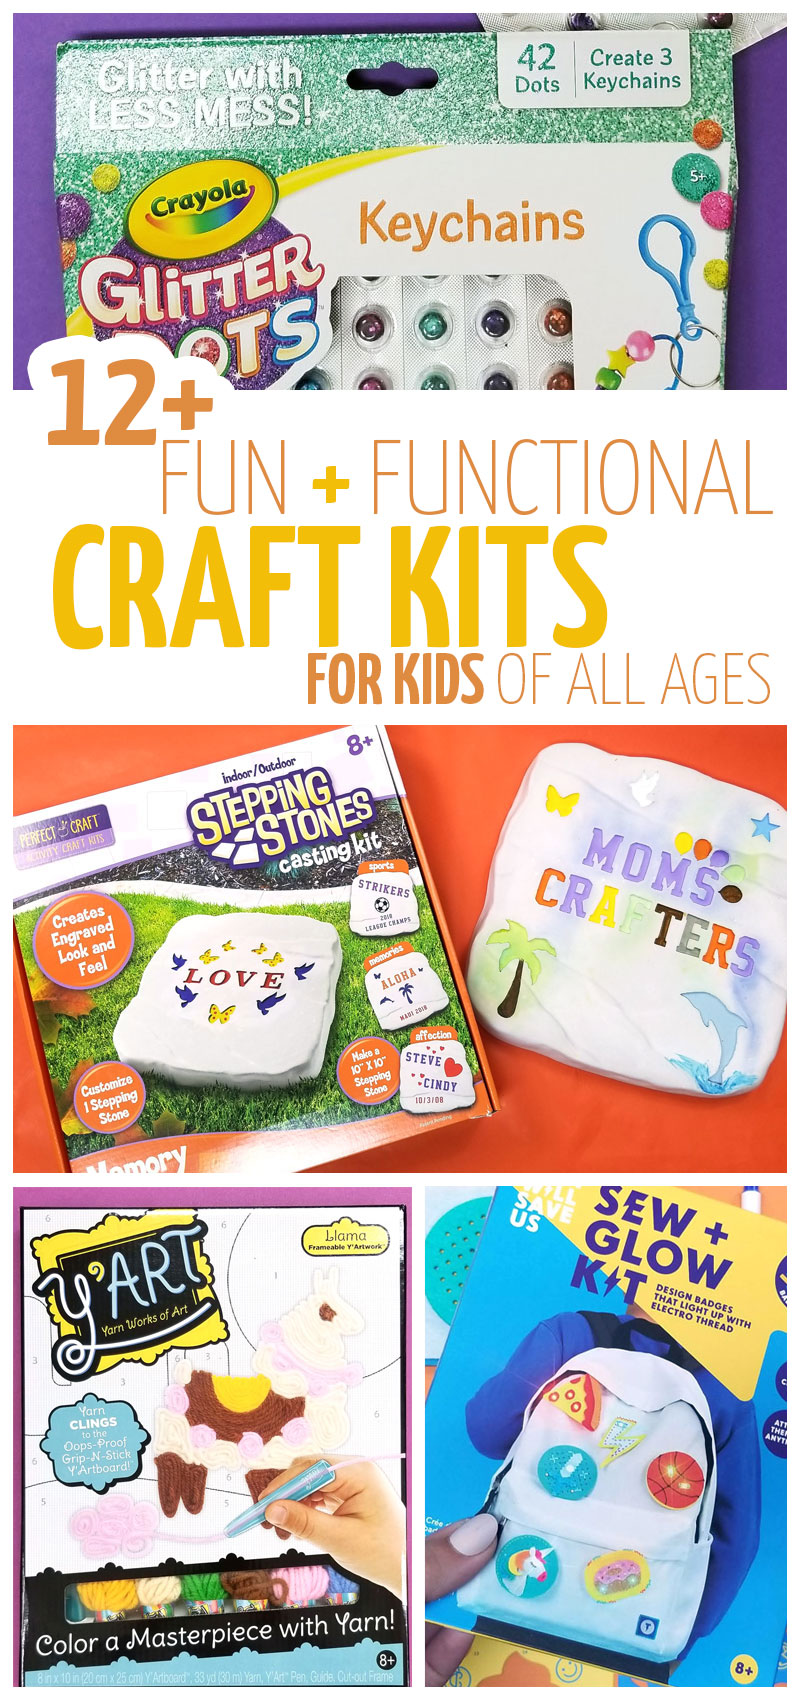 https://www.momsandcrafters.com/wp-content/uploads/2019/10/CRAFT-making-kits-for-kids-v2.jpg.webp